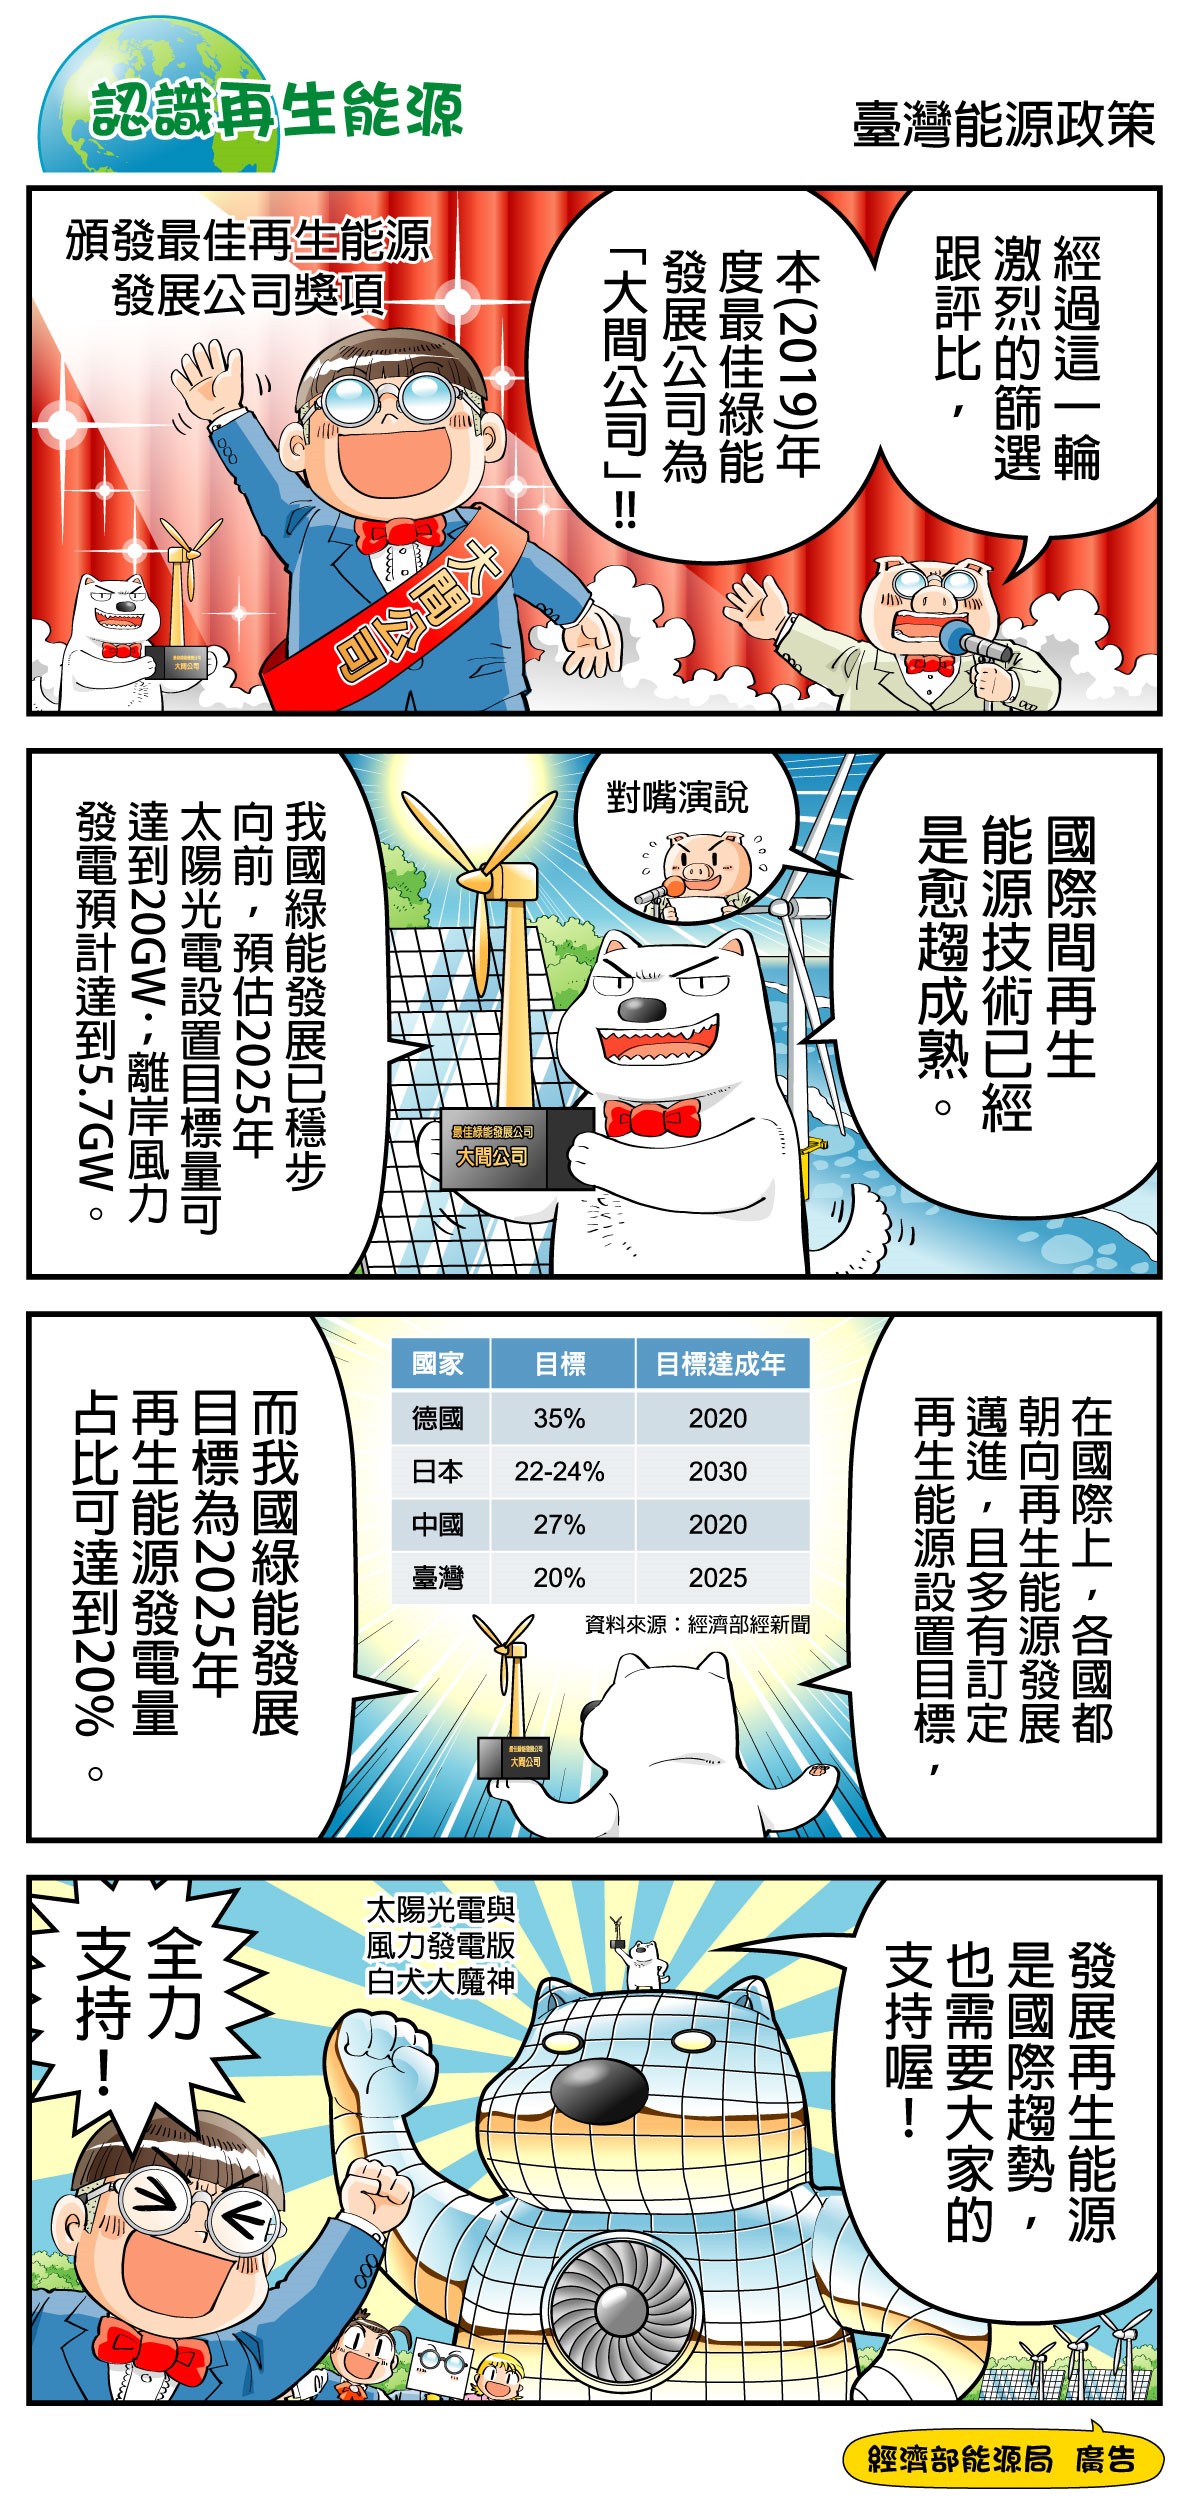 2020年1月漫畫推廣活動 - 台灣能源政策